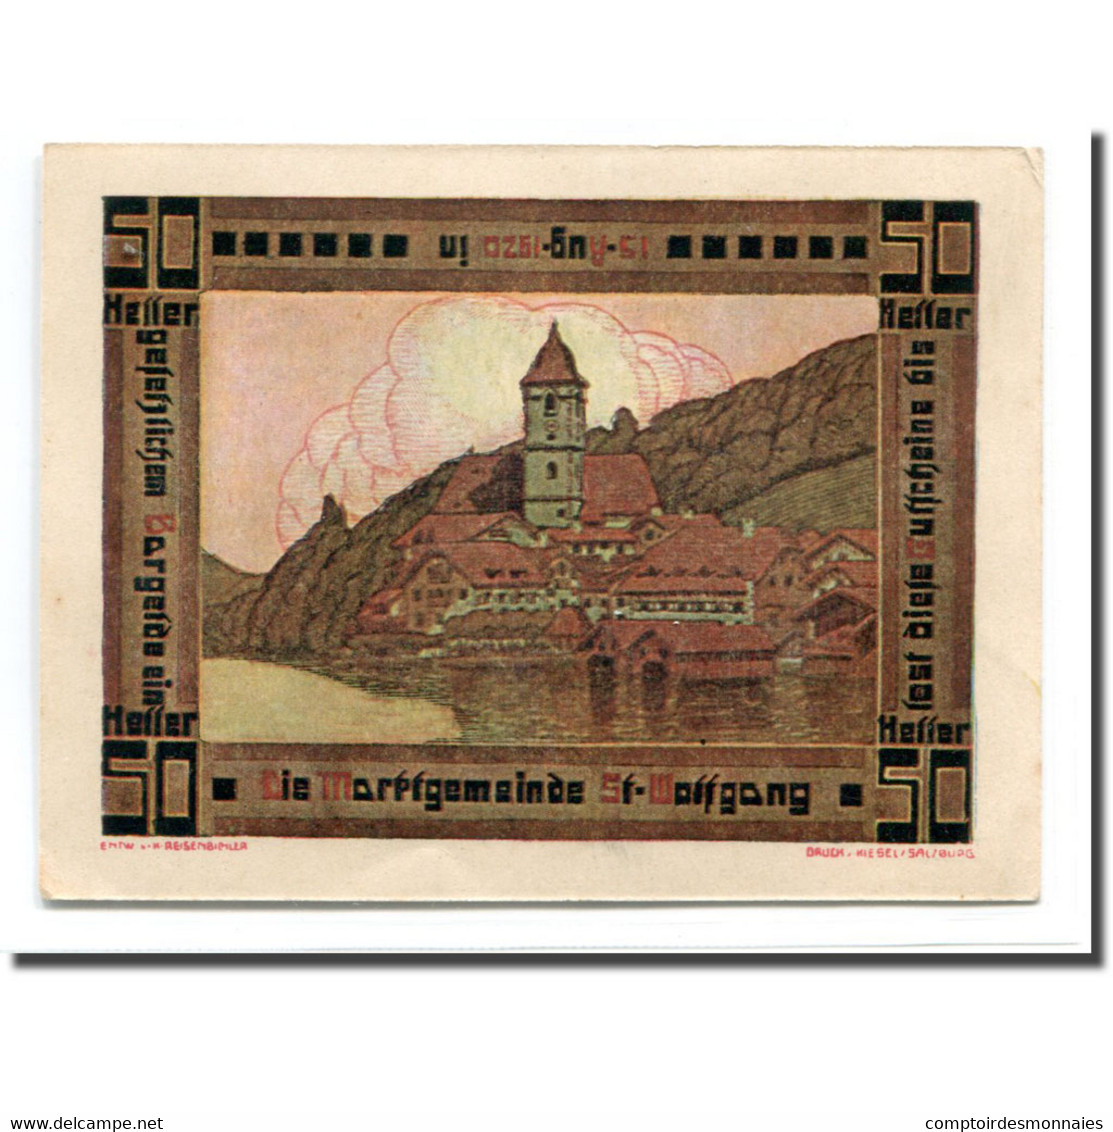 Billet, Autriche, St. Wolfgang O.Ö. Marktgemeinde, 50 Heller, Paysage 1, 1920 - Autriche